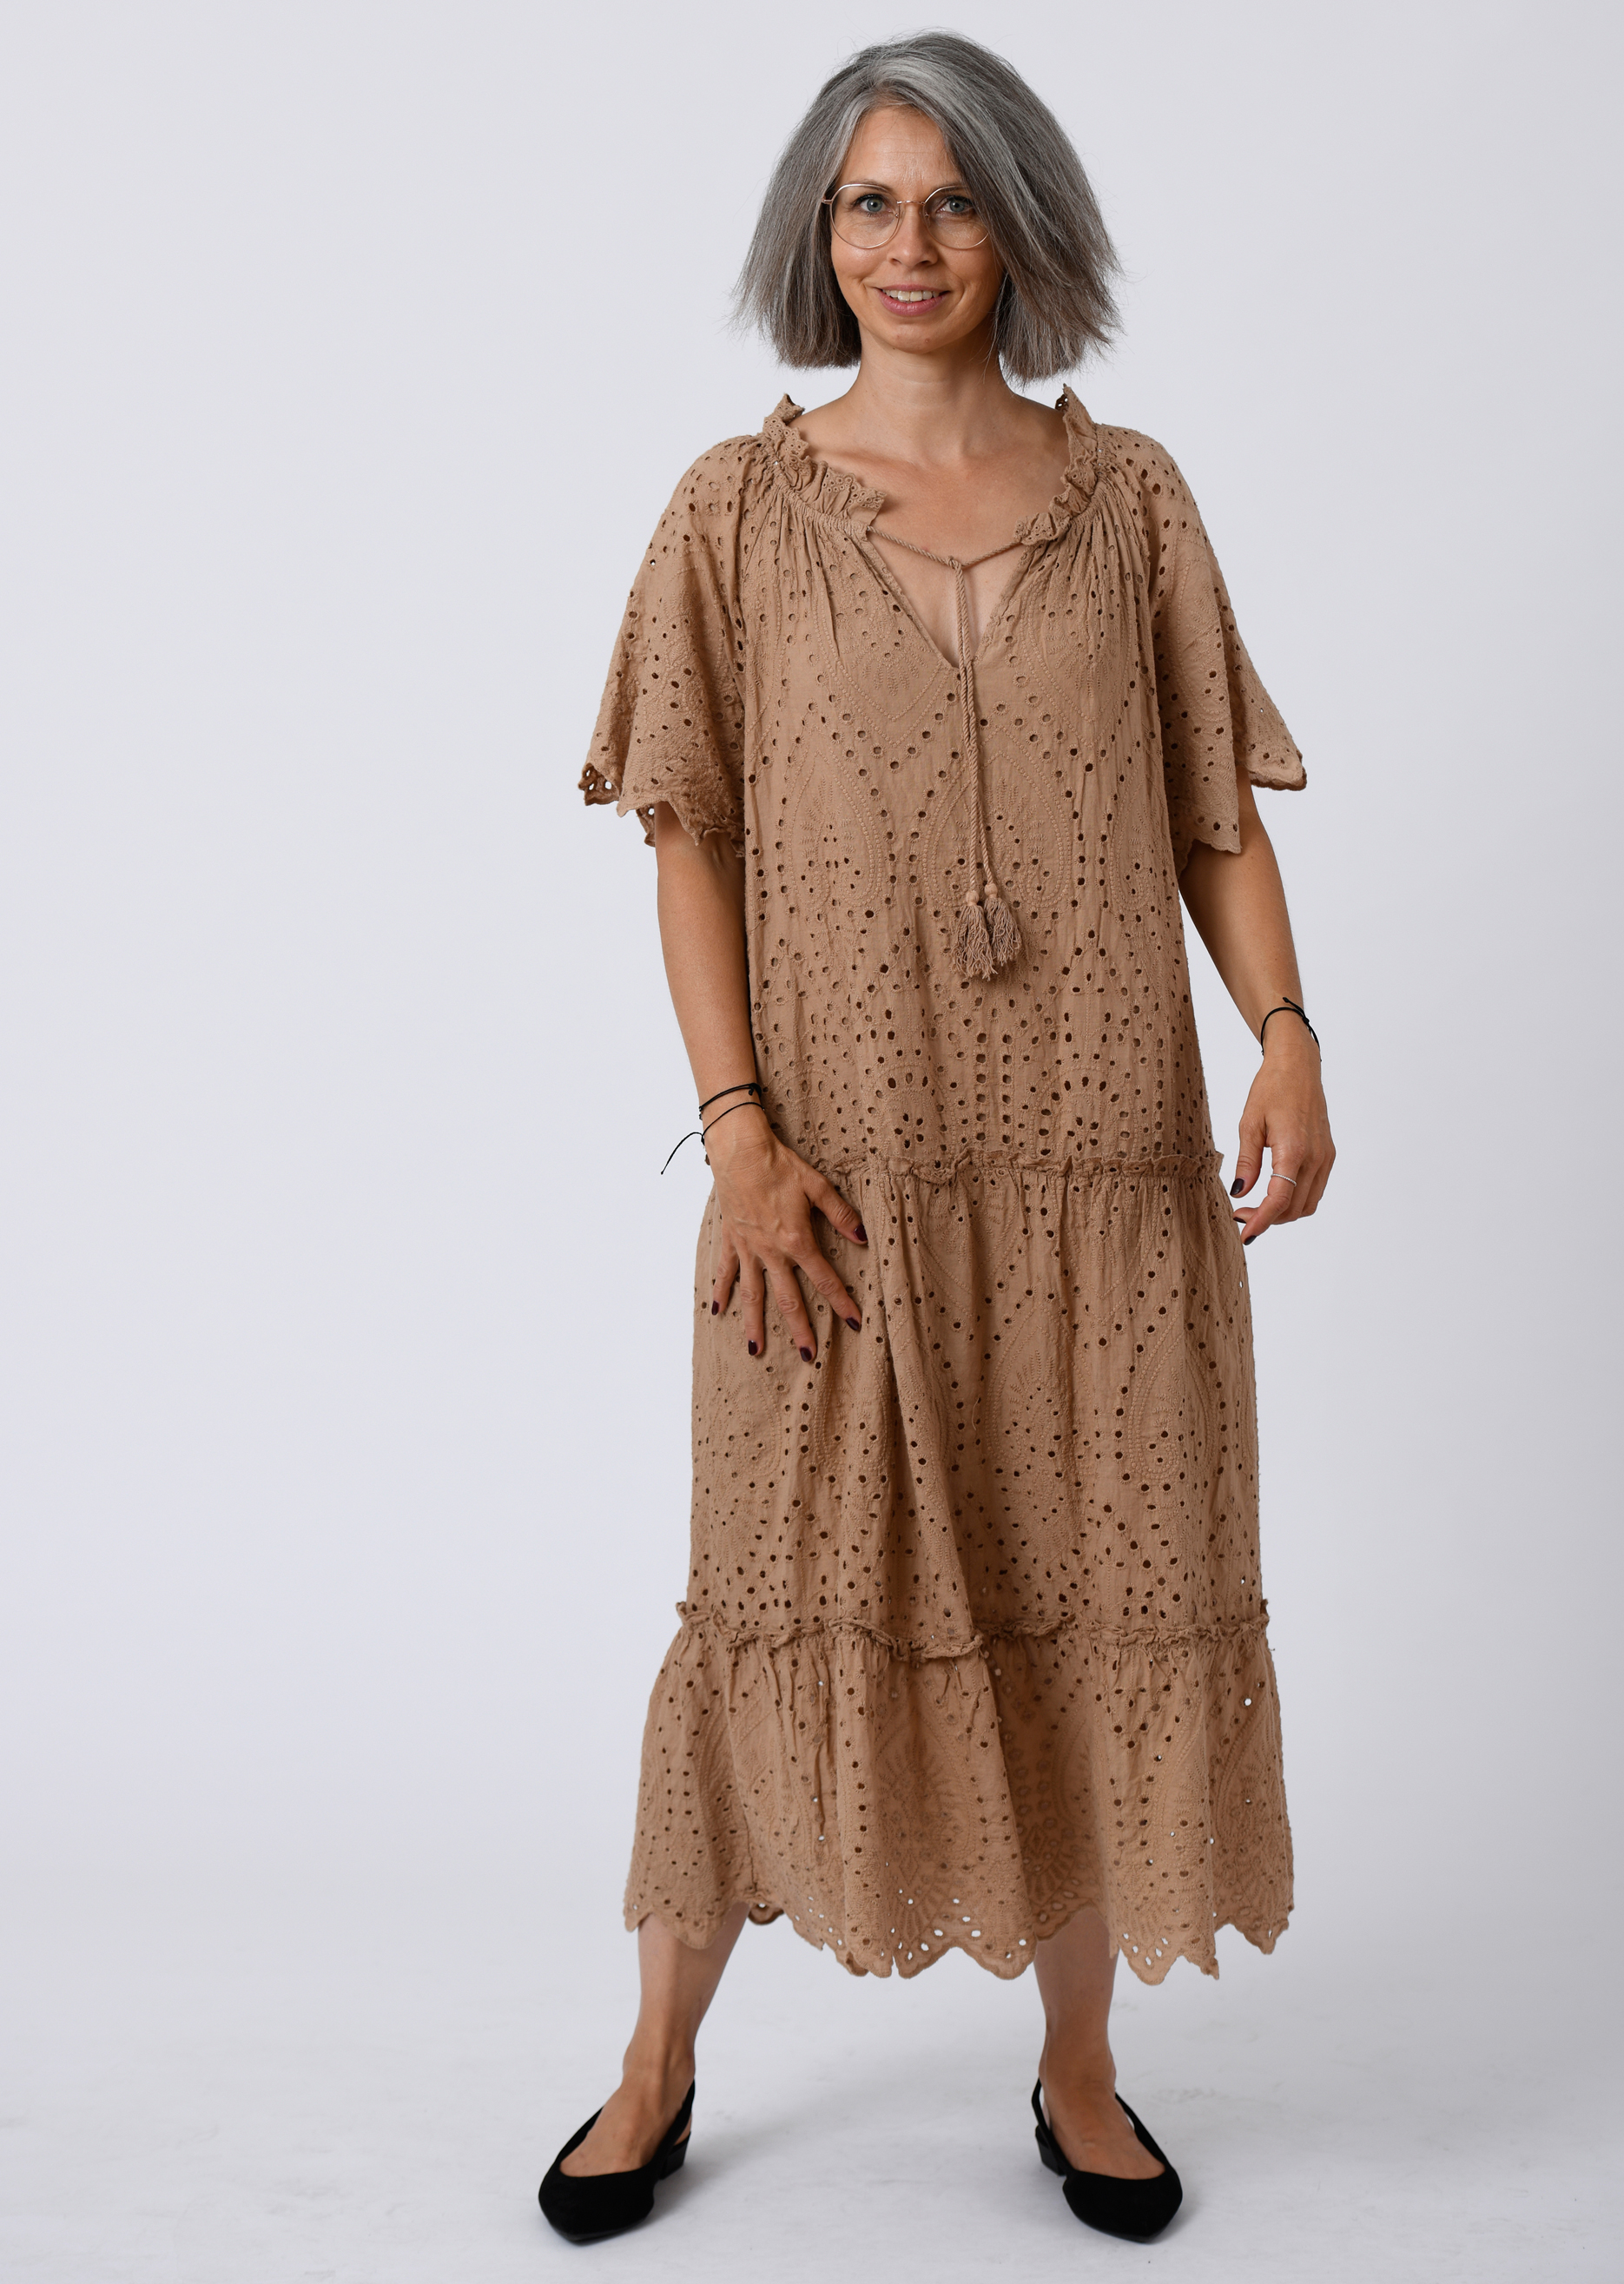 langes Kleid aus Lochspitze mit Carmenausschnitt in Farbe nougat | Kleider  | SALE | Salzkorn-Fashion